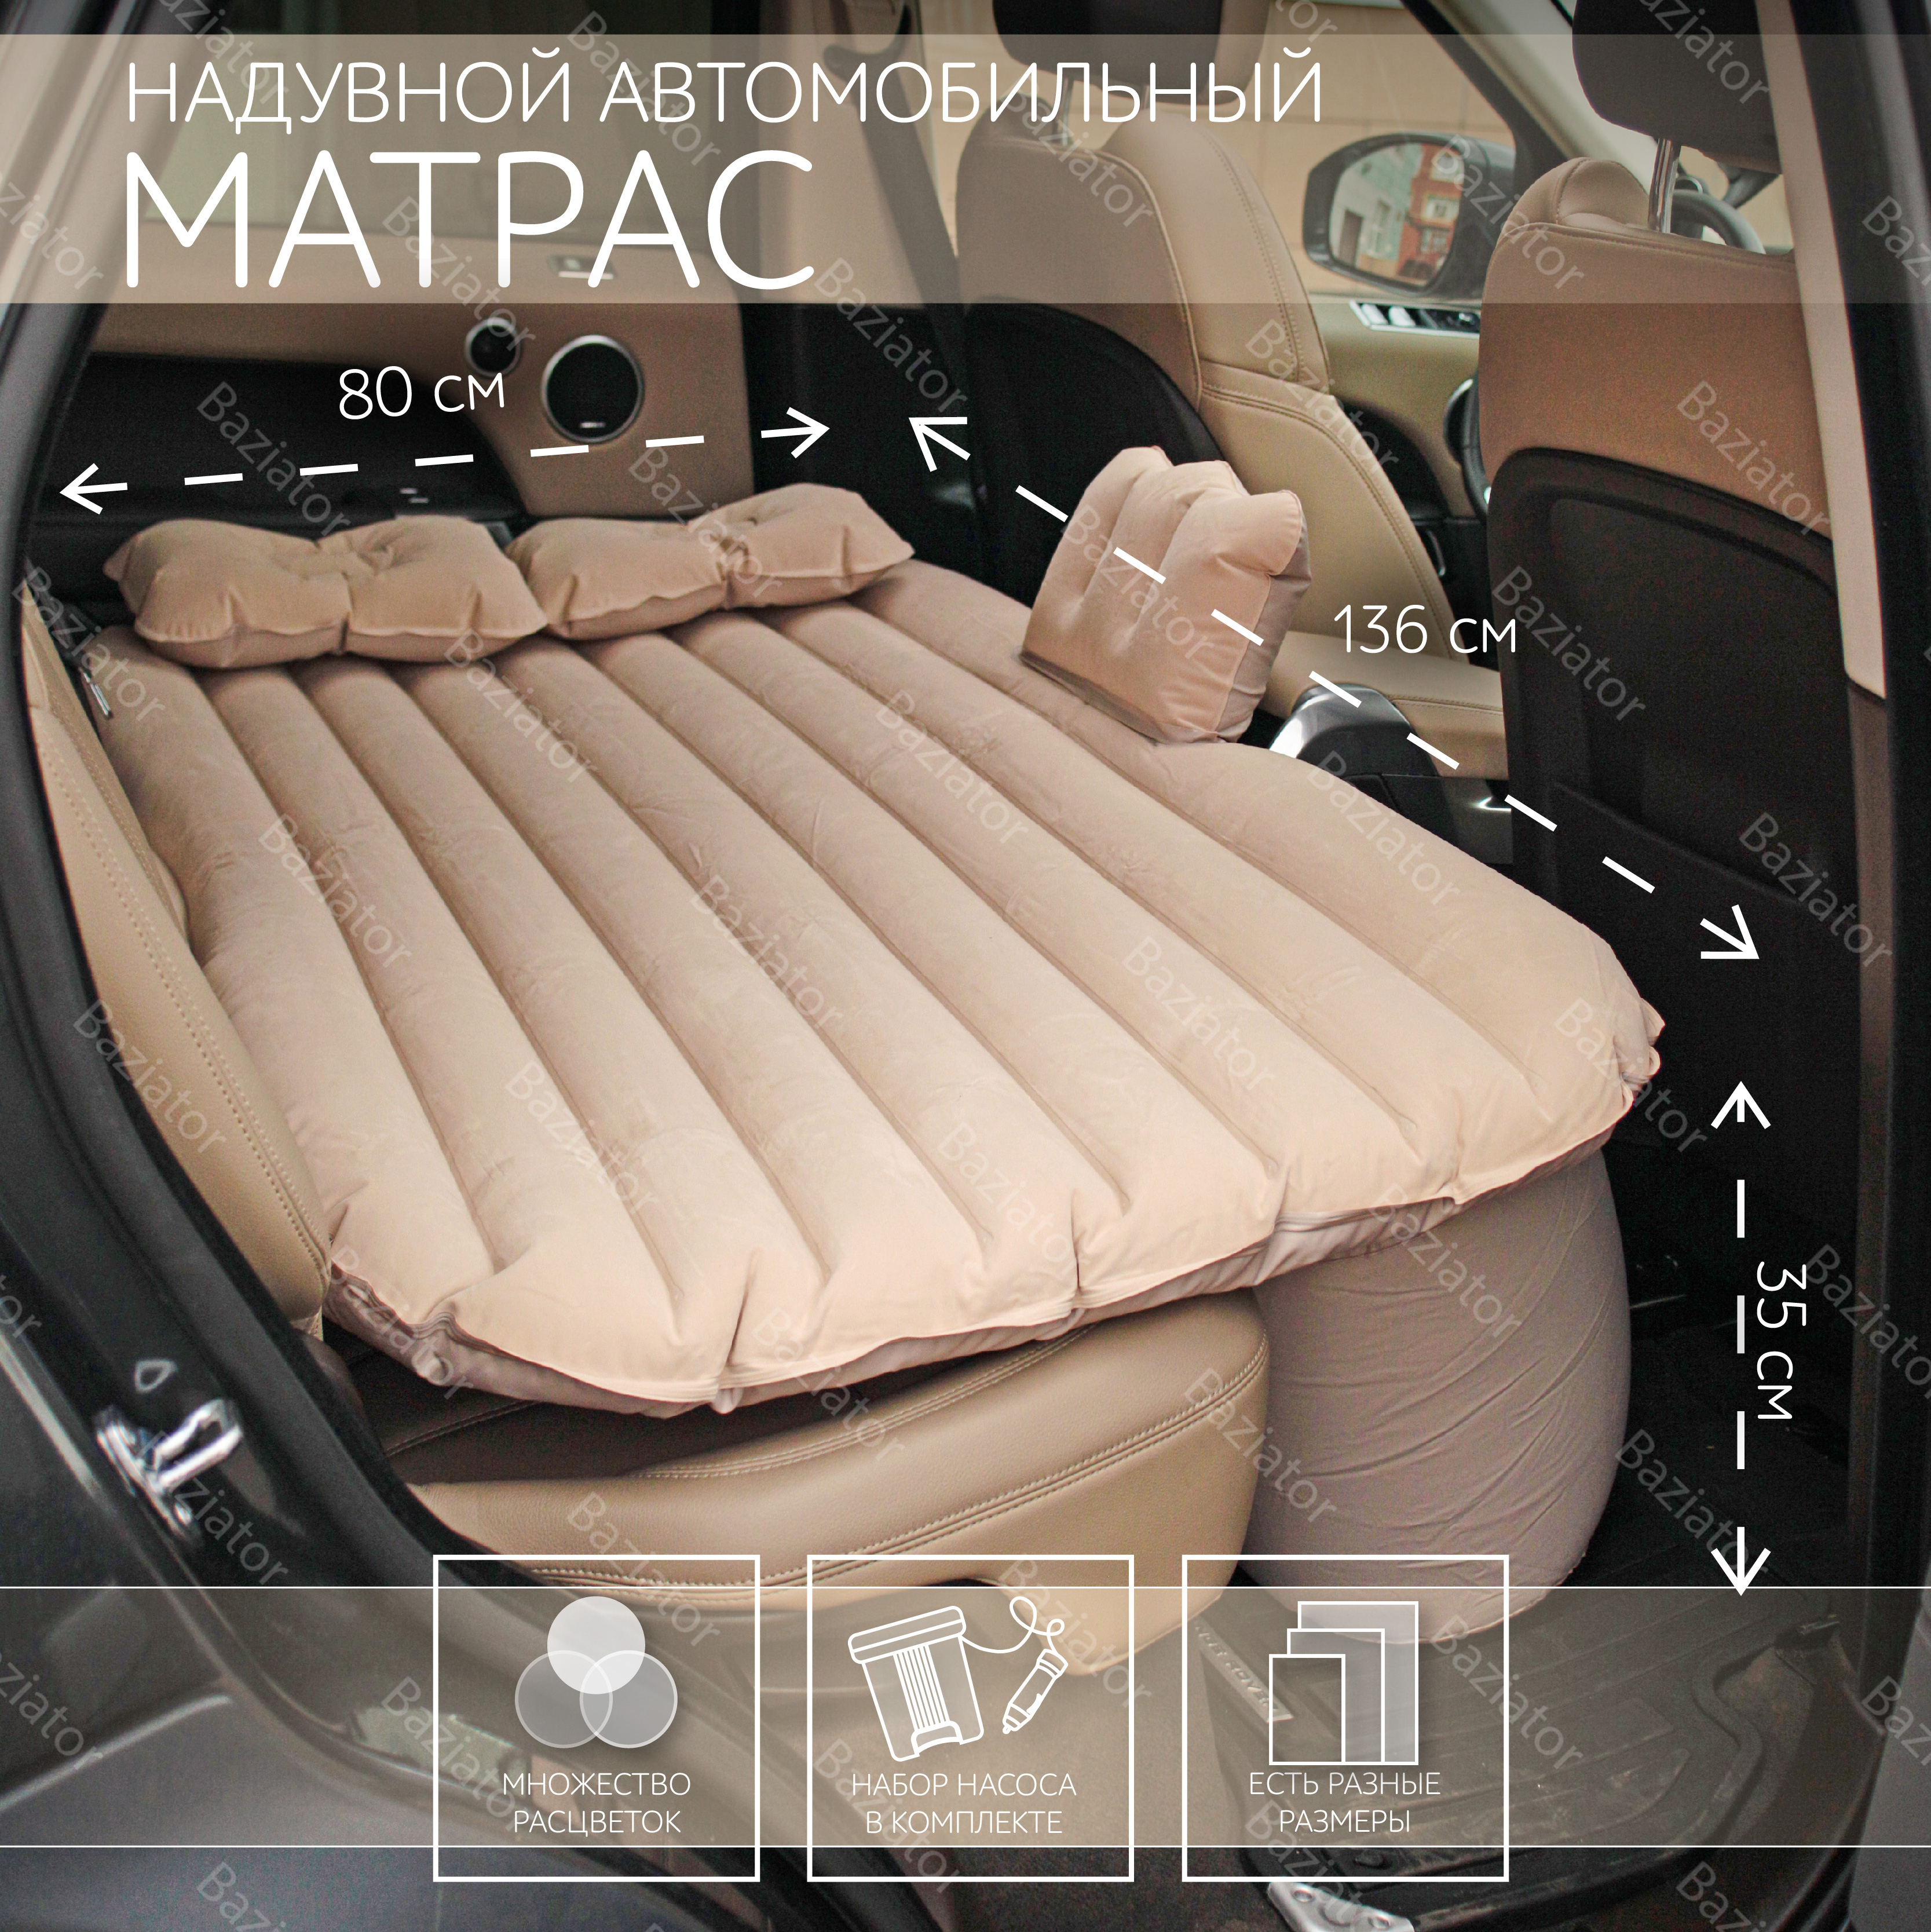 Изготовление надувных матрасов для автомобиля